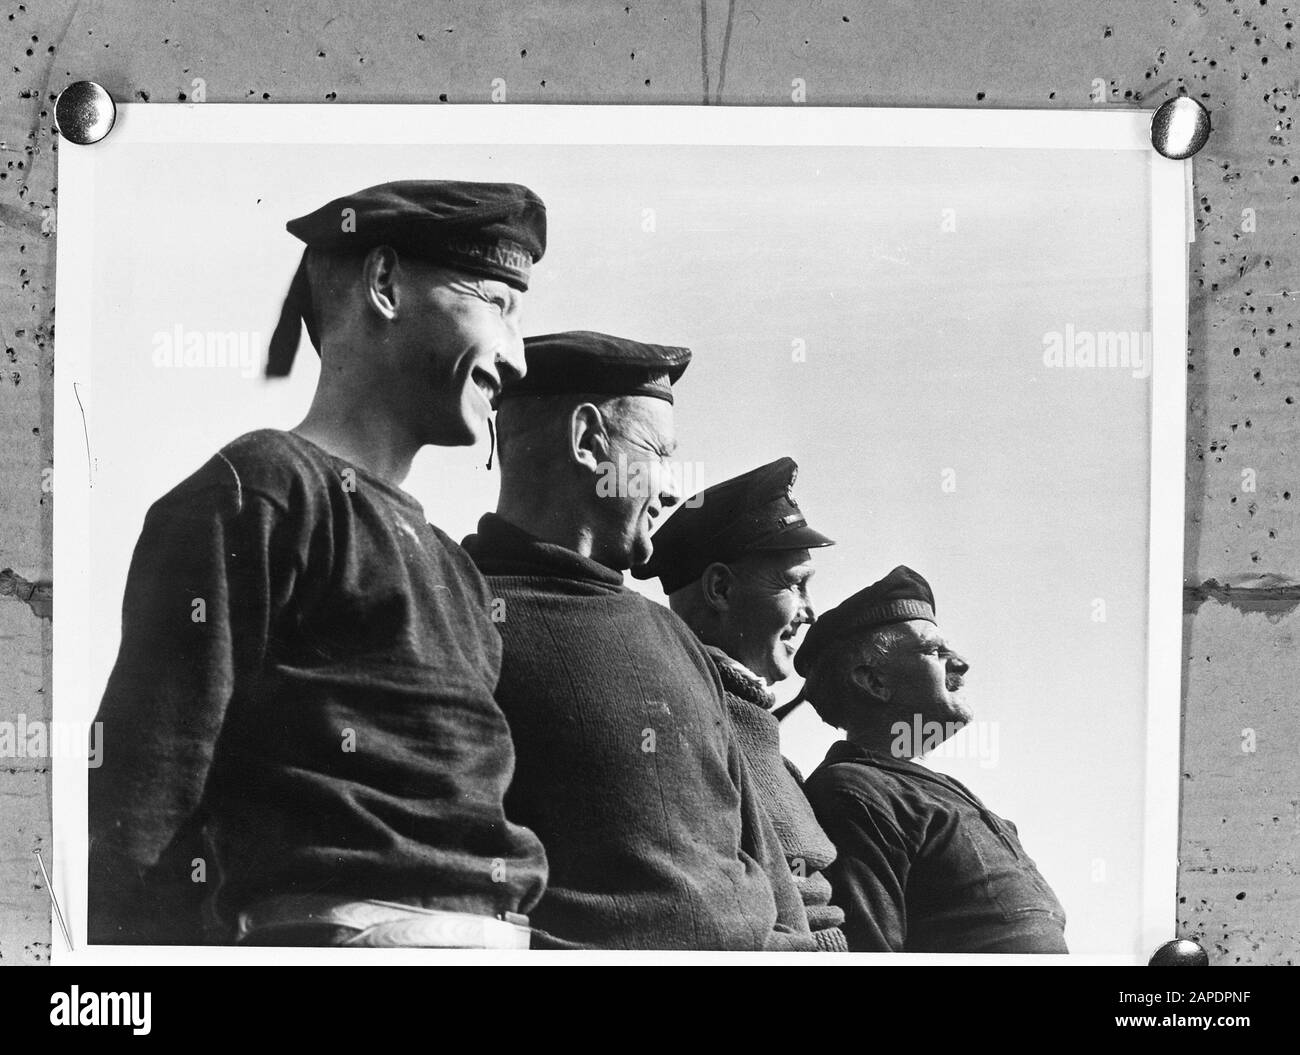 Minesweeper néerlandais Description: Membres d'équipage d'un minesweeper néerlandais, anciens membres de la flotte de pêche. Date : mars 1942 mots clés : équipages, marine, gardiens de mines, seconde Guerre mondiale Banque D'Images